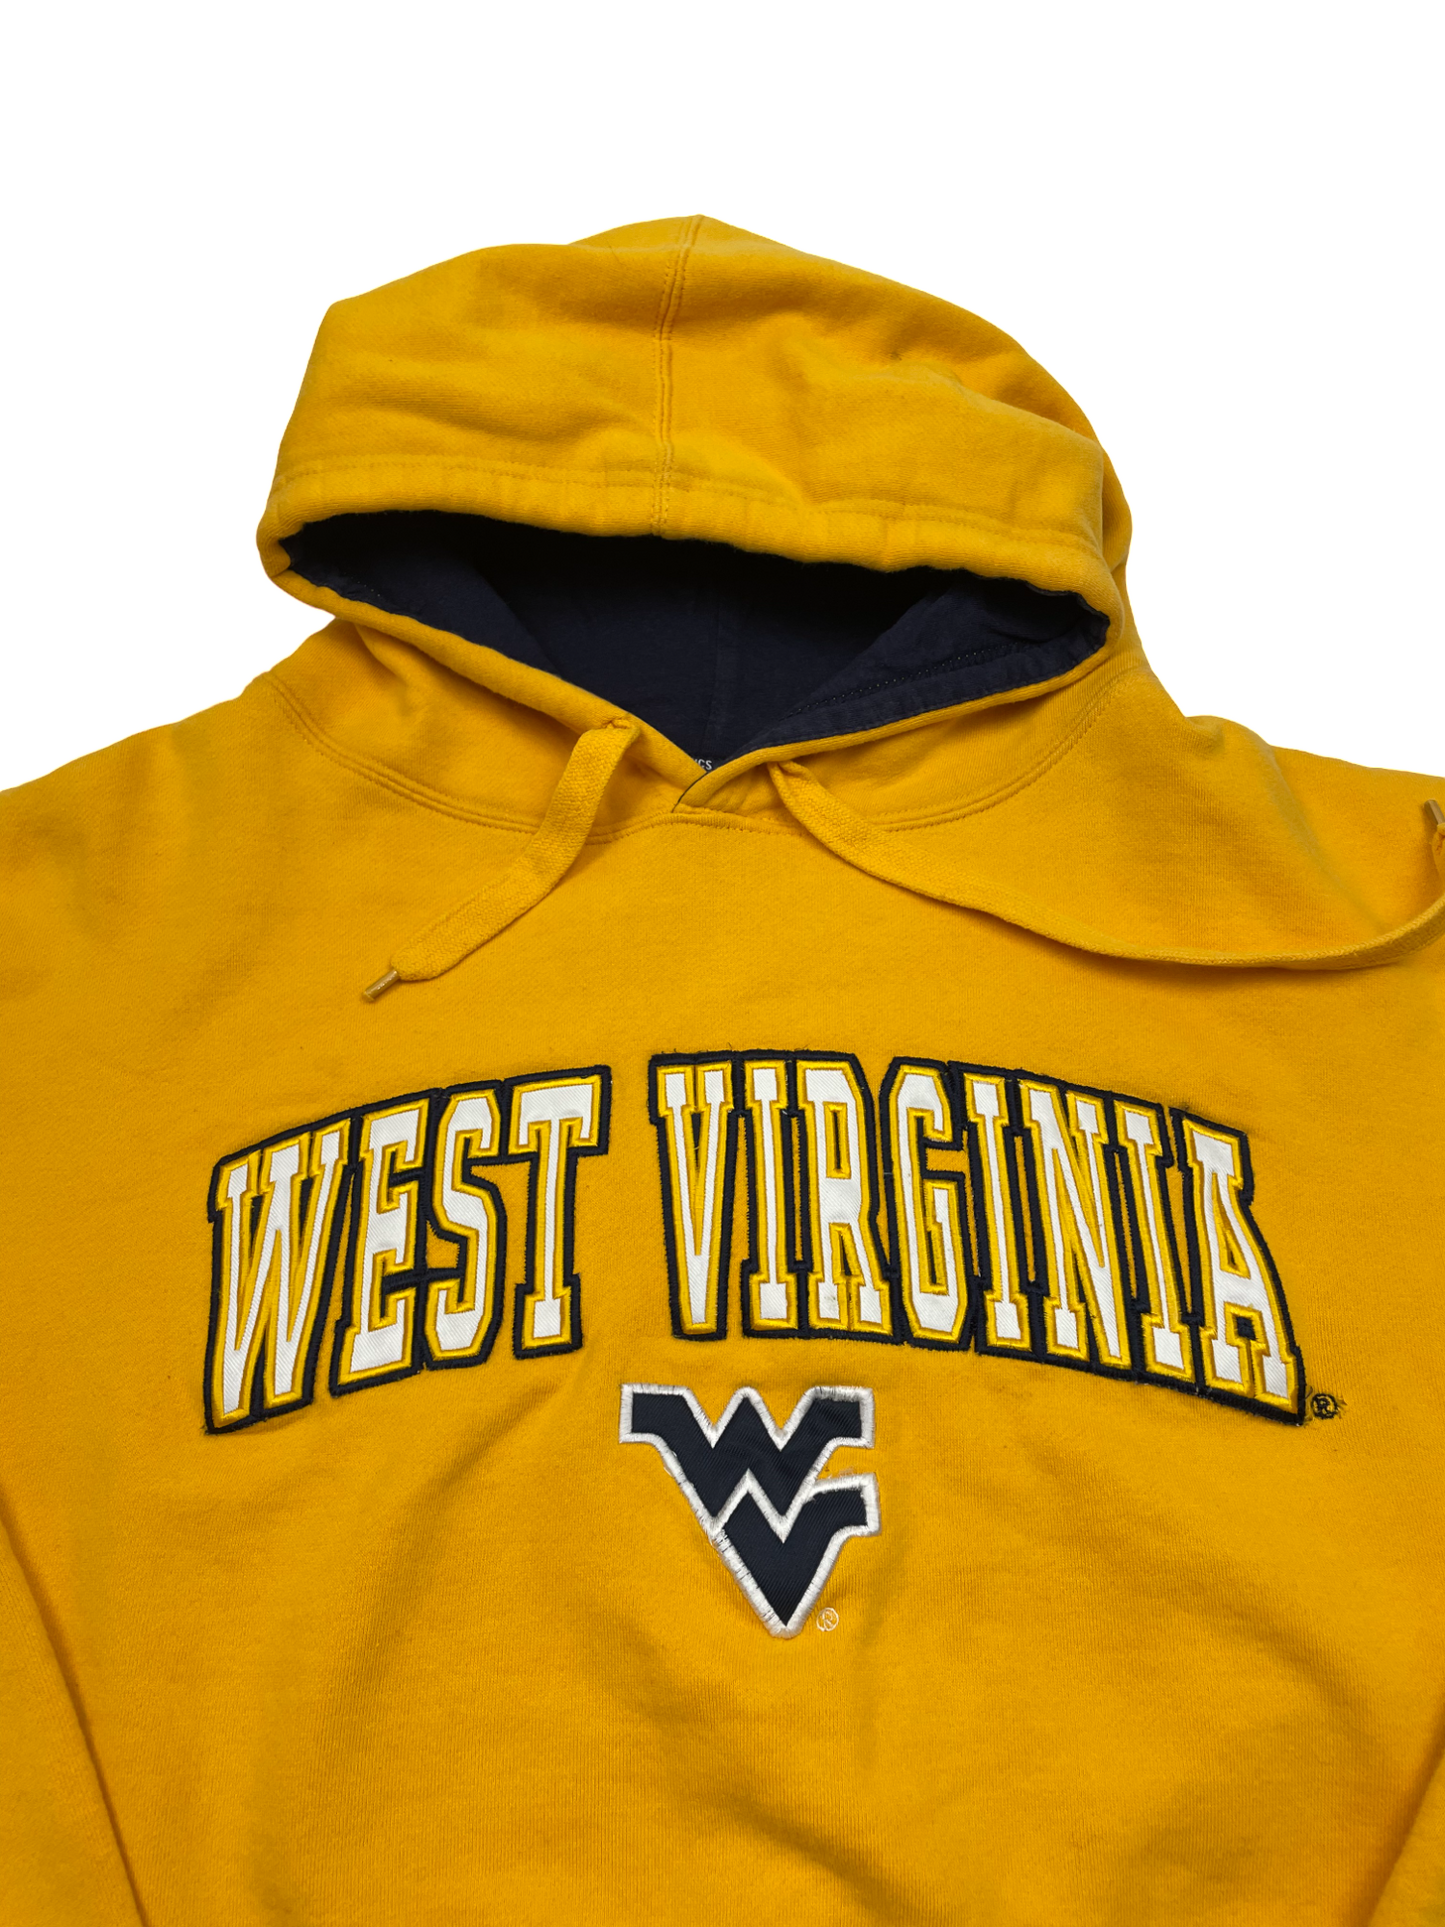 West Virginia Yellow Hoodie